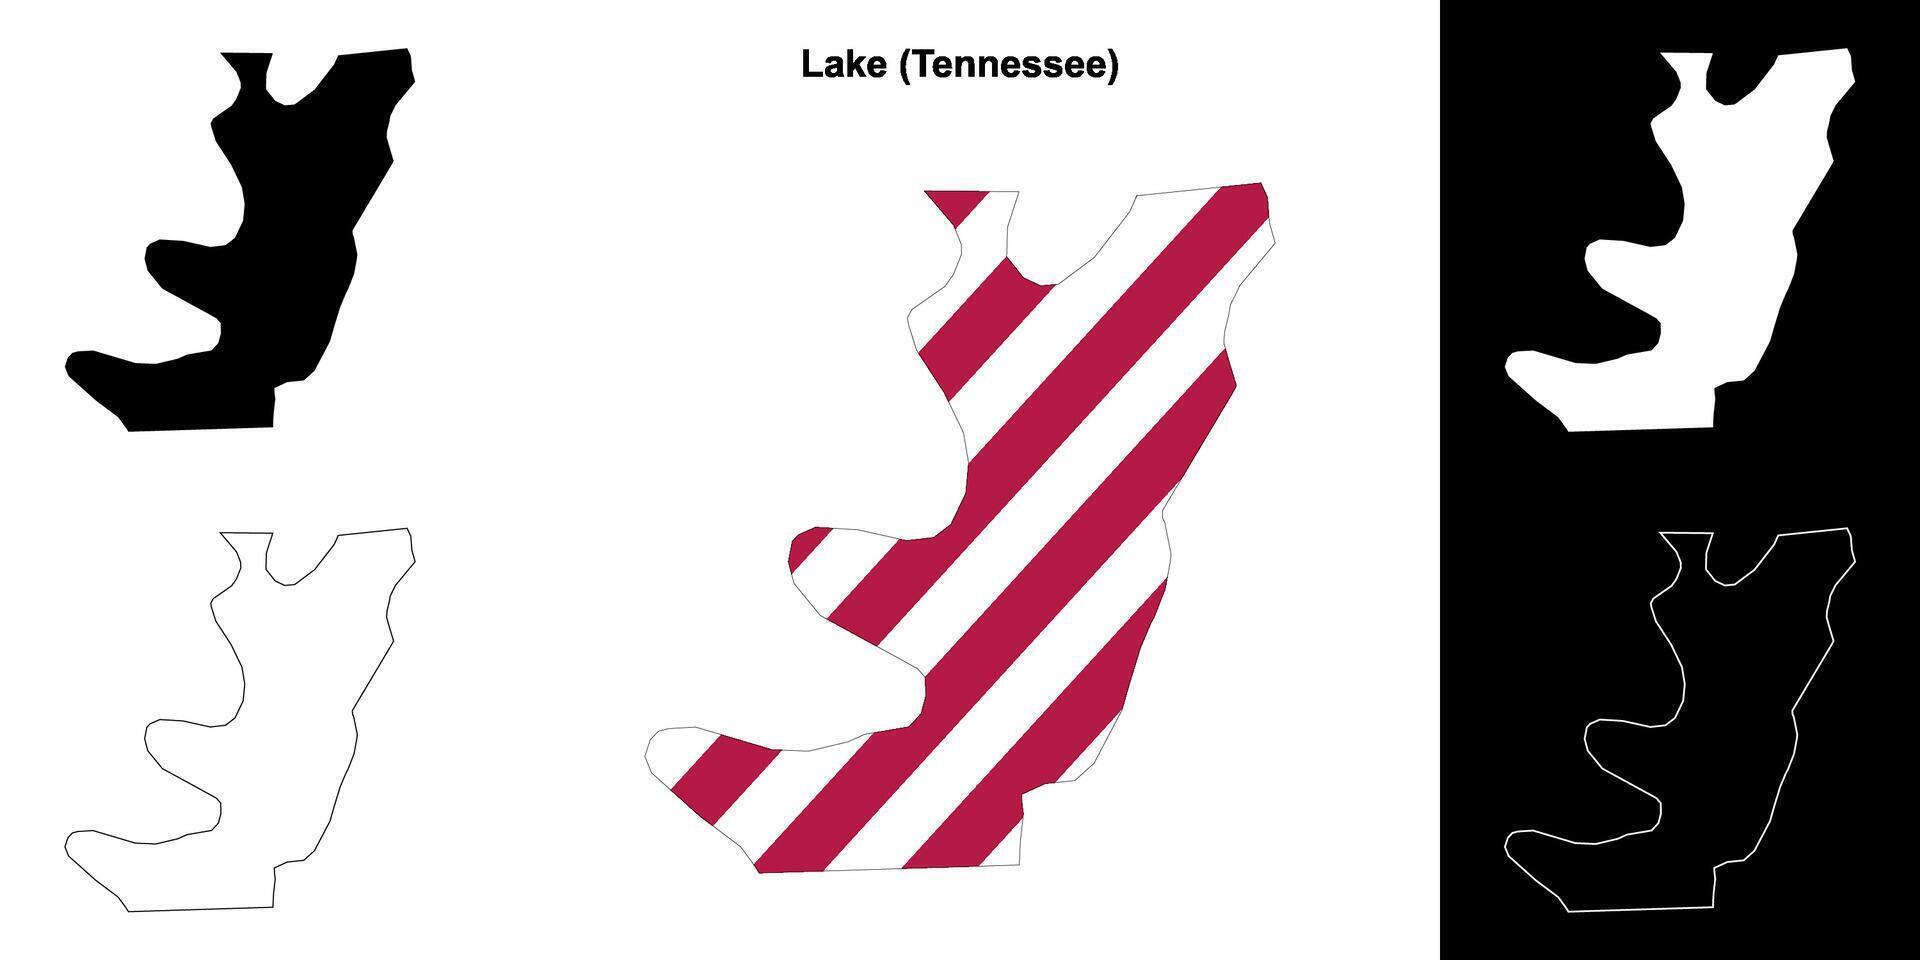 lago condado, Tennessee esboço mapa conjunto vetor